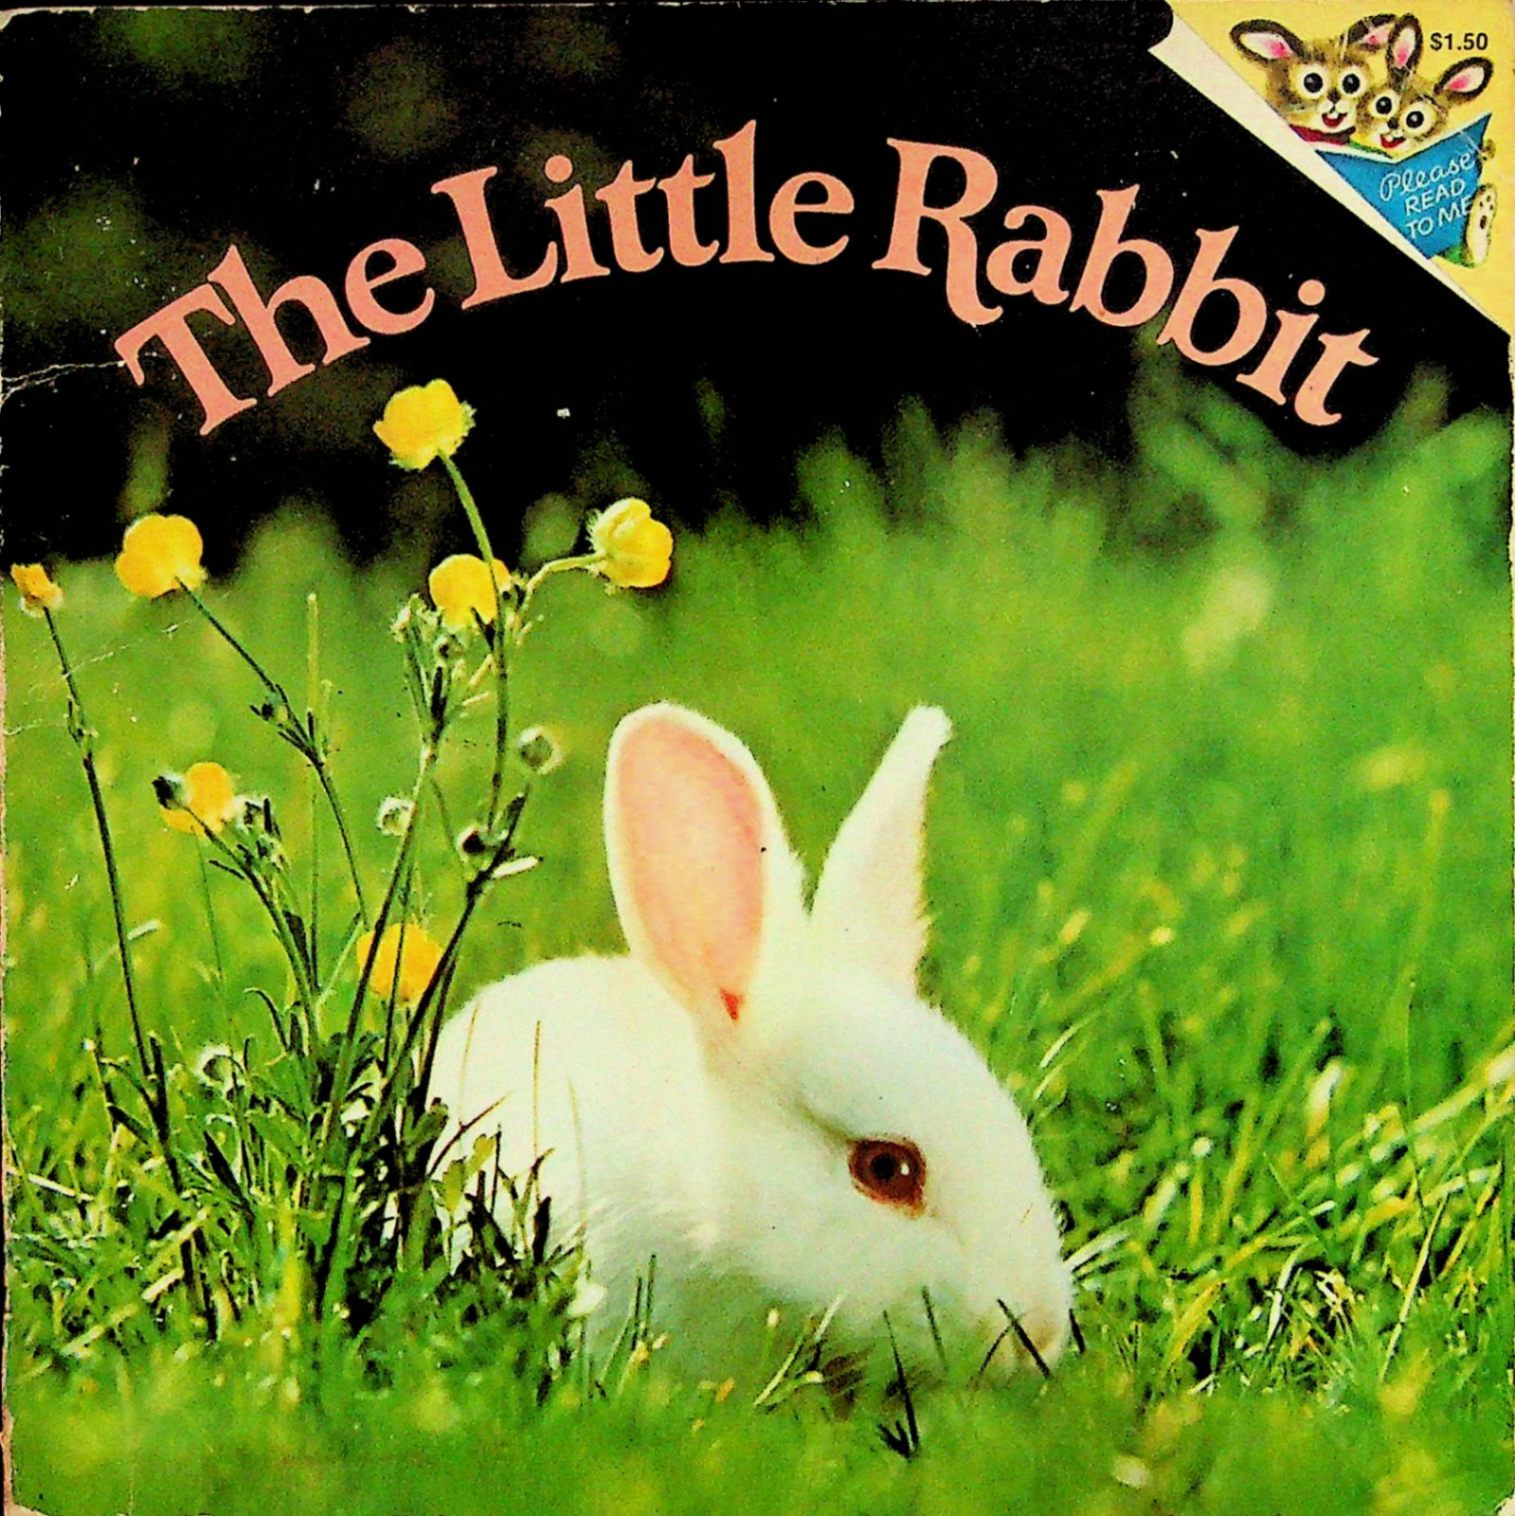 首页 进口图书 儿童图书 动物 兔 the little rabbit  (机器翻译:小